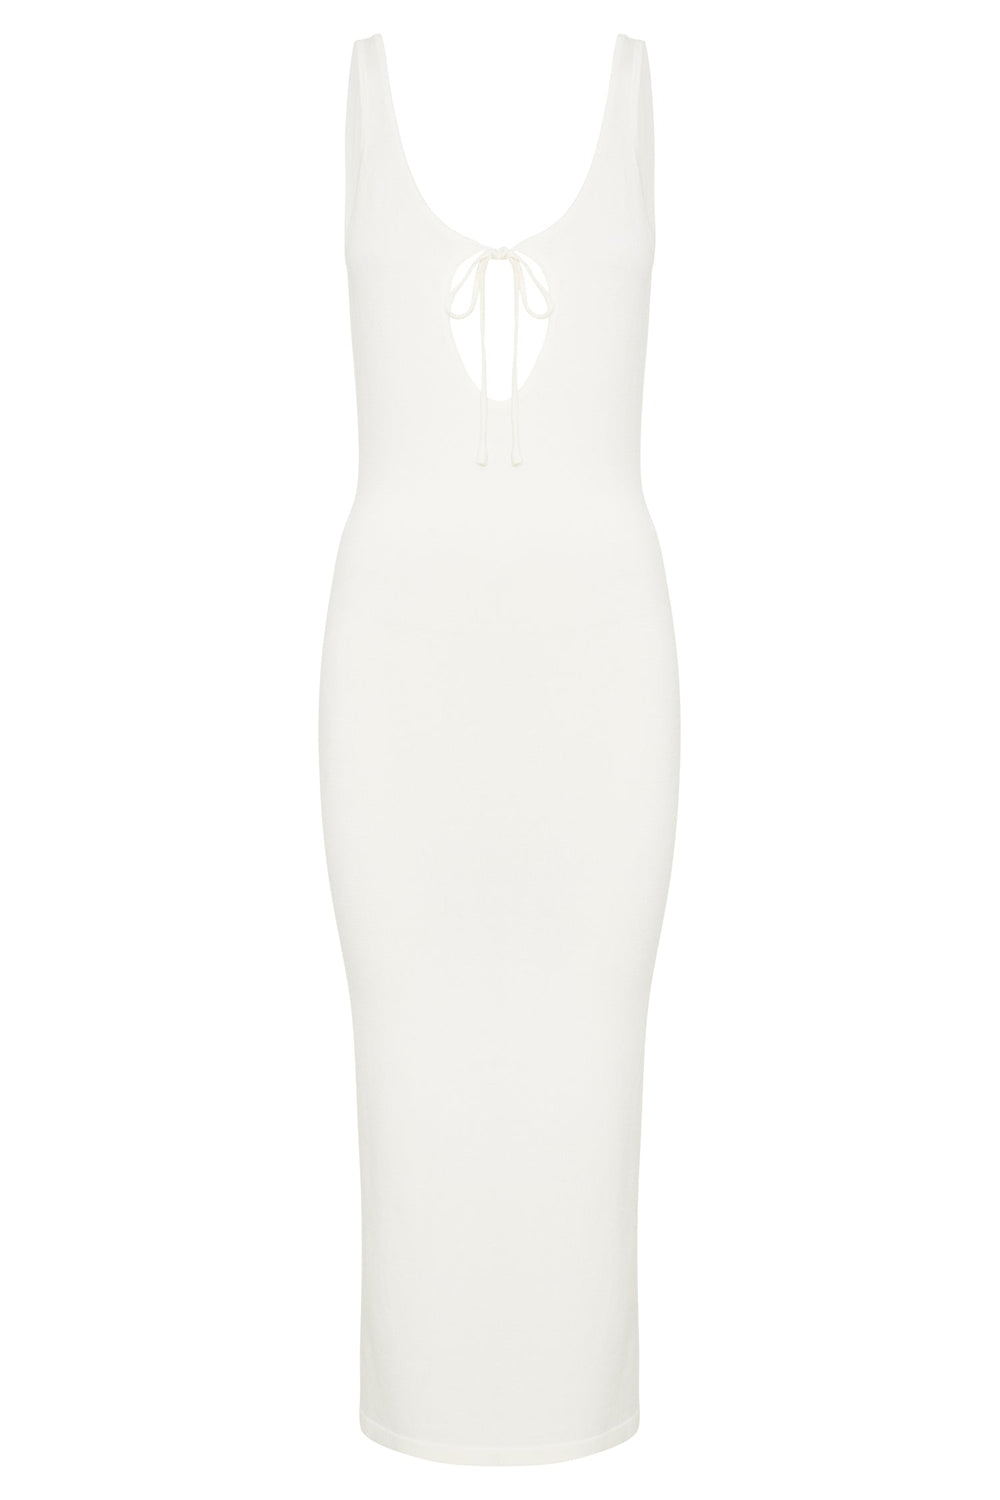 Nola Cut Out Knit Midi Dress - Off White